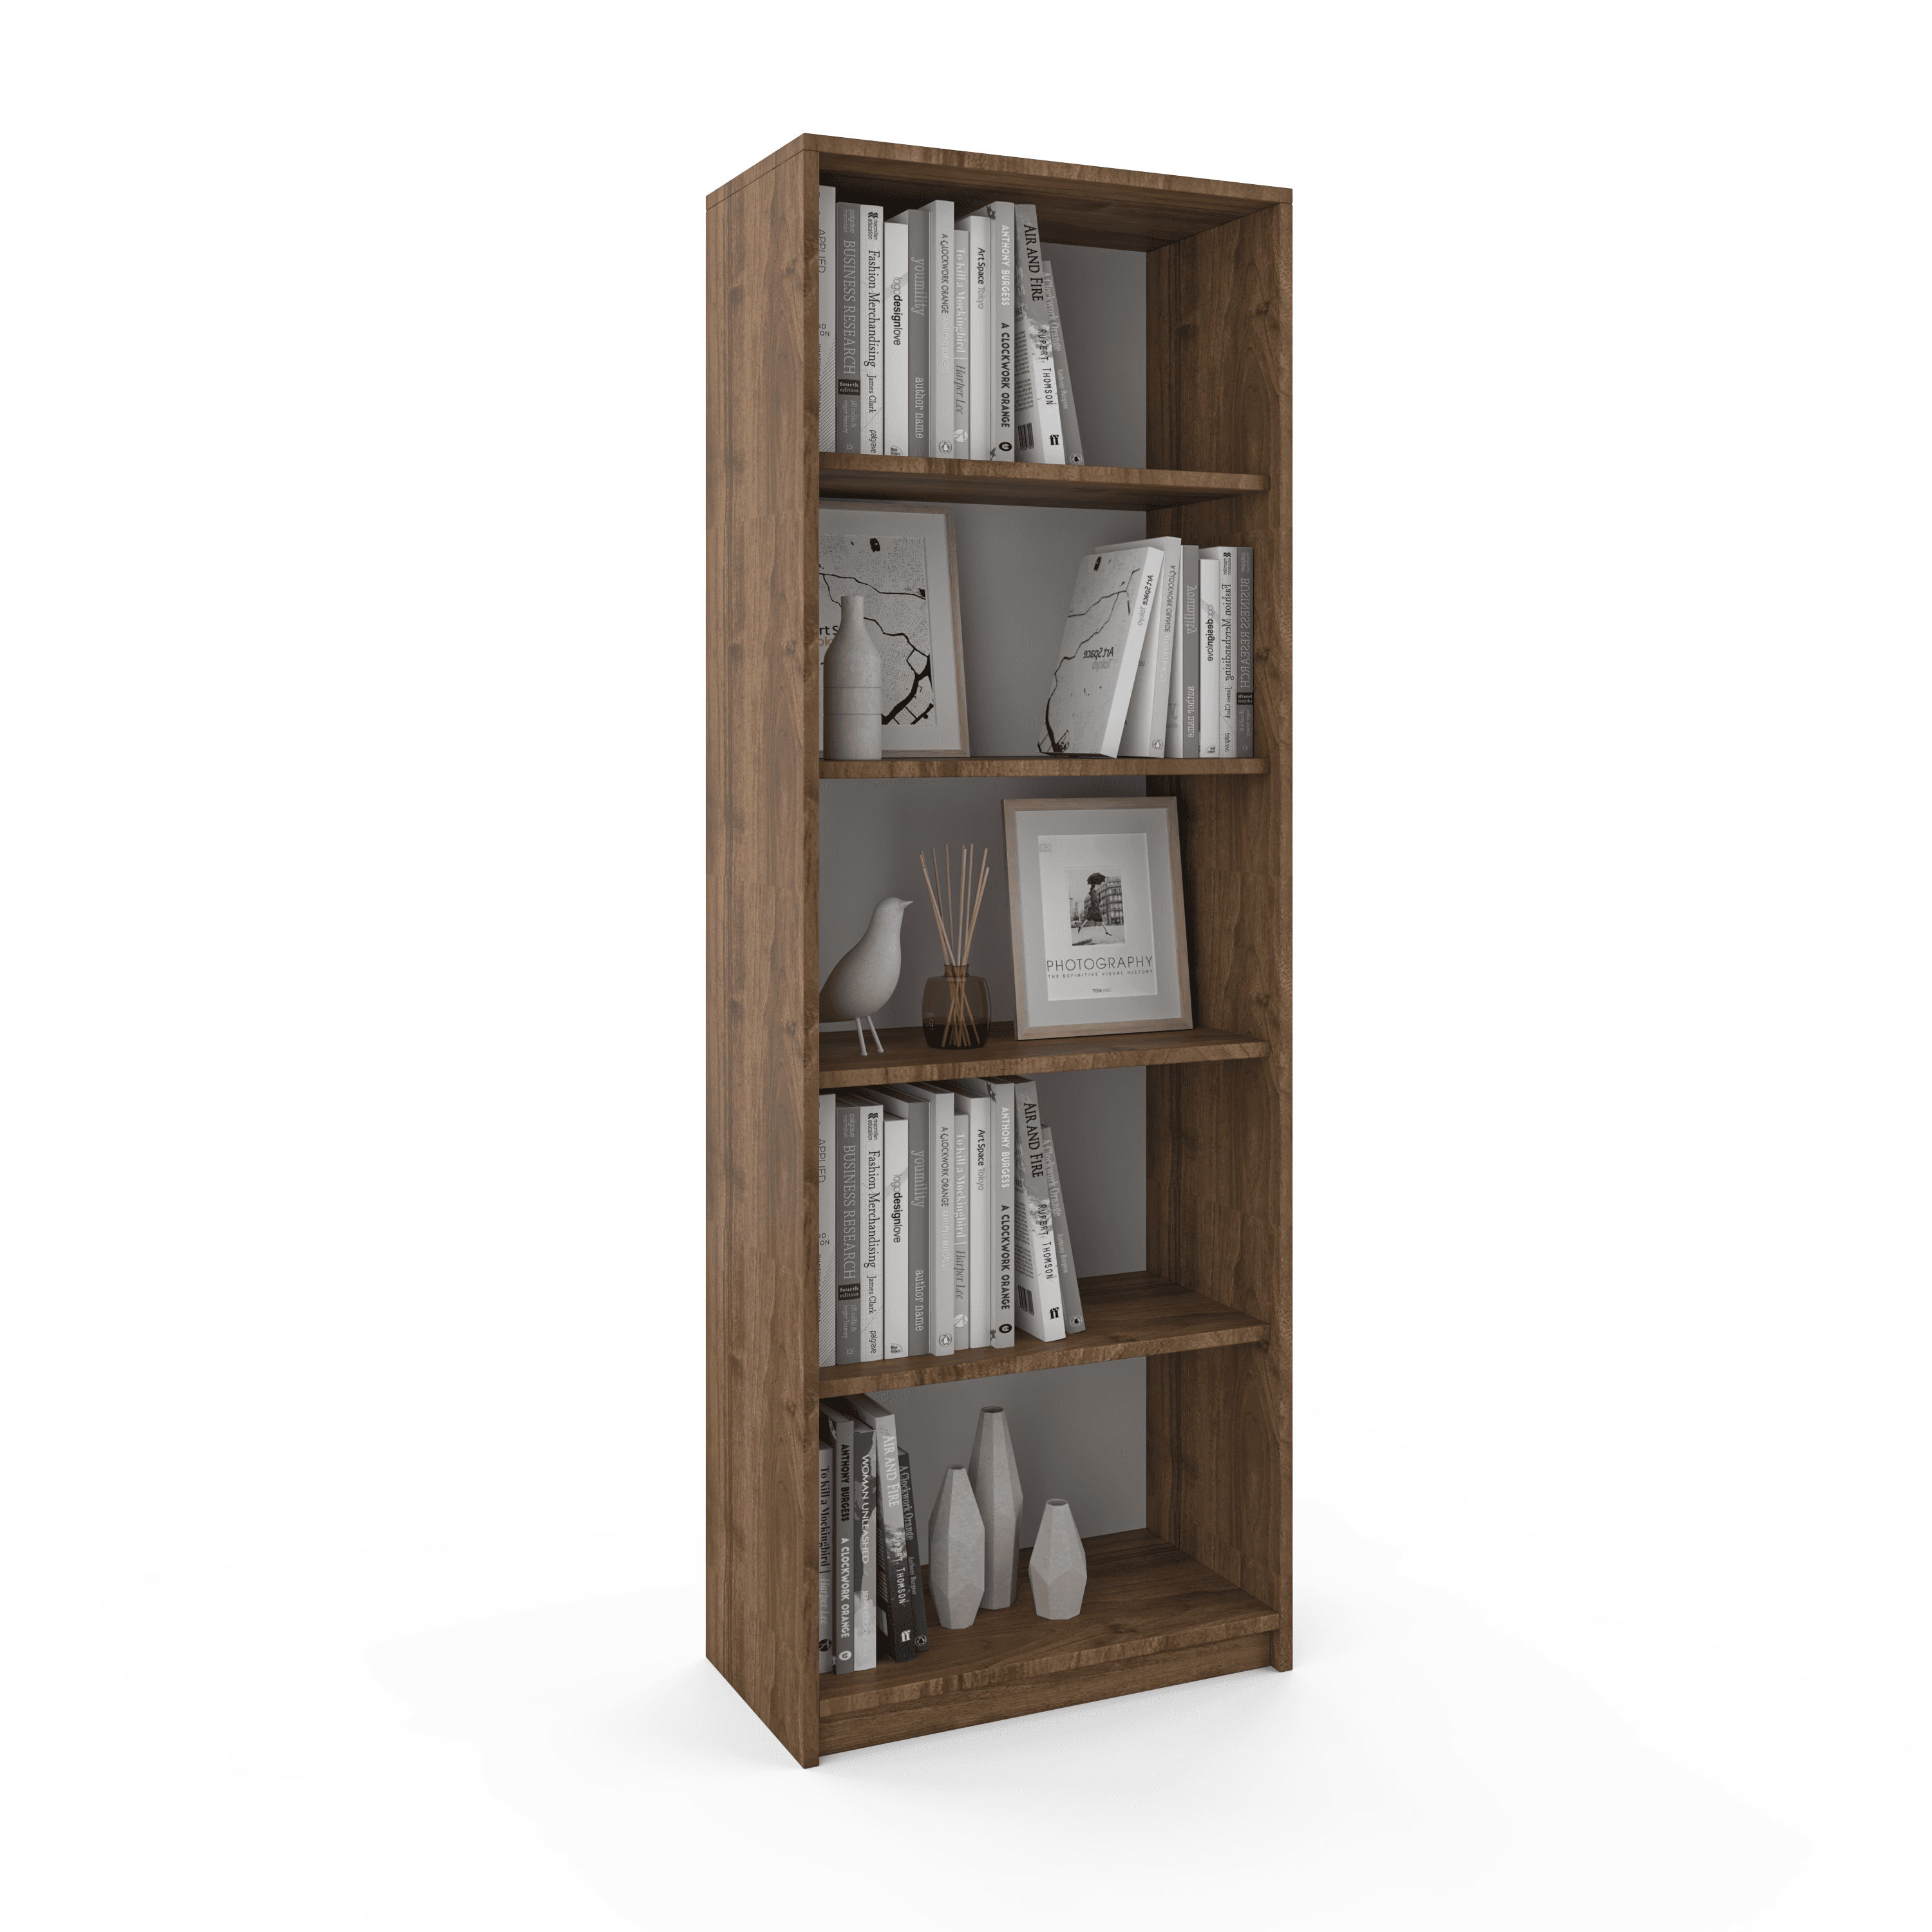 Vera Bookshelf - Walnut Color